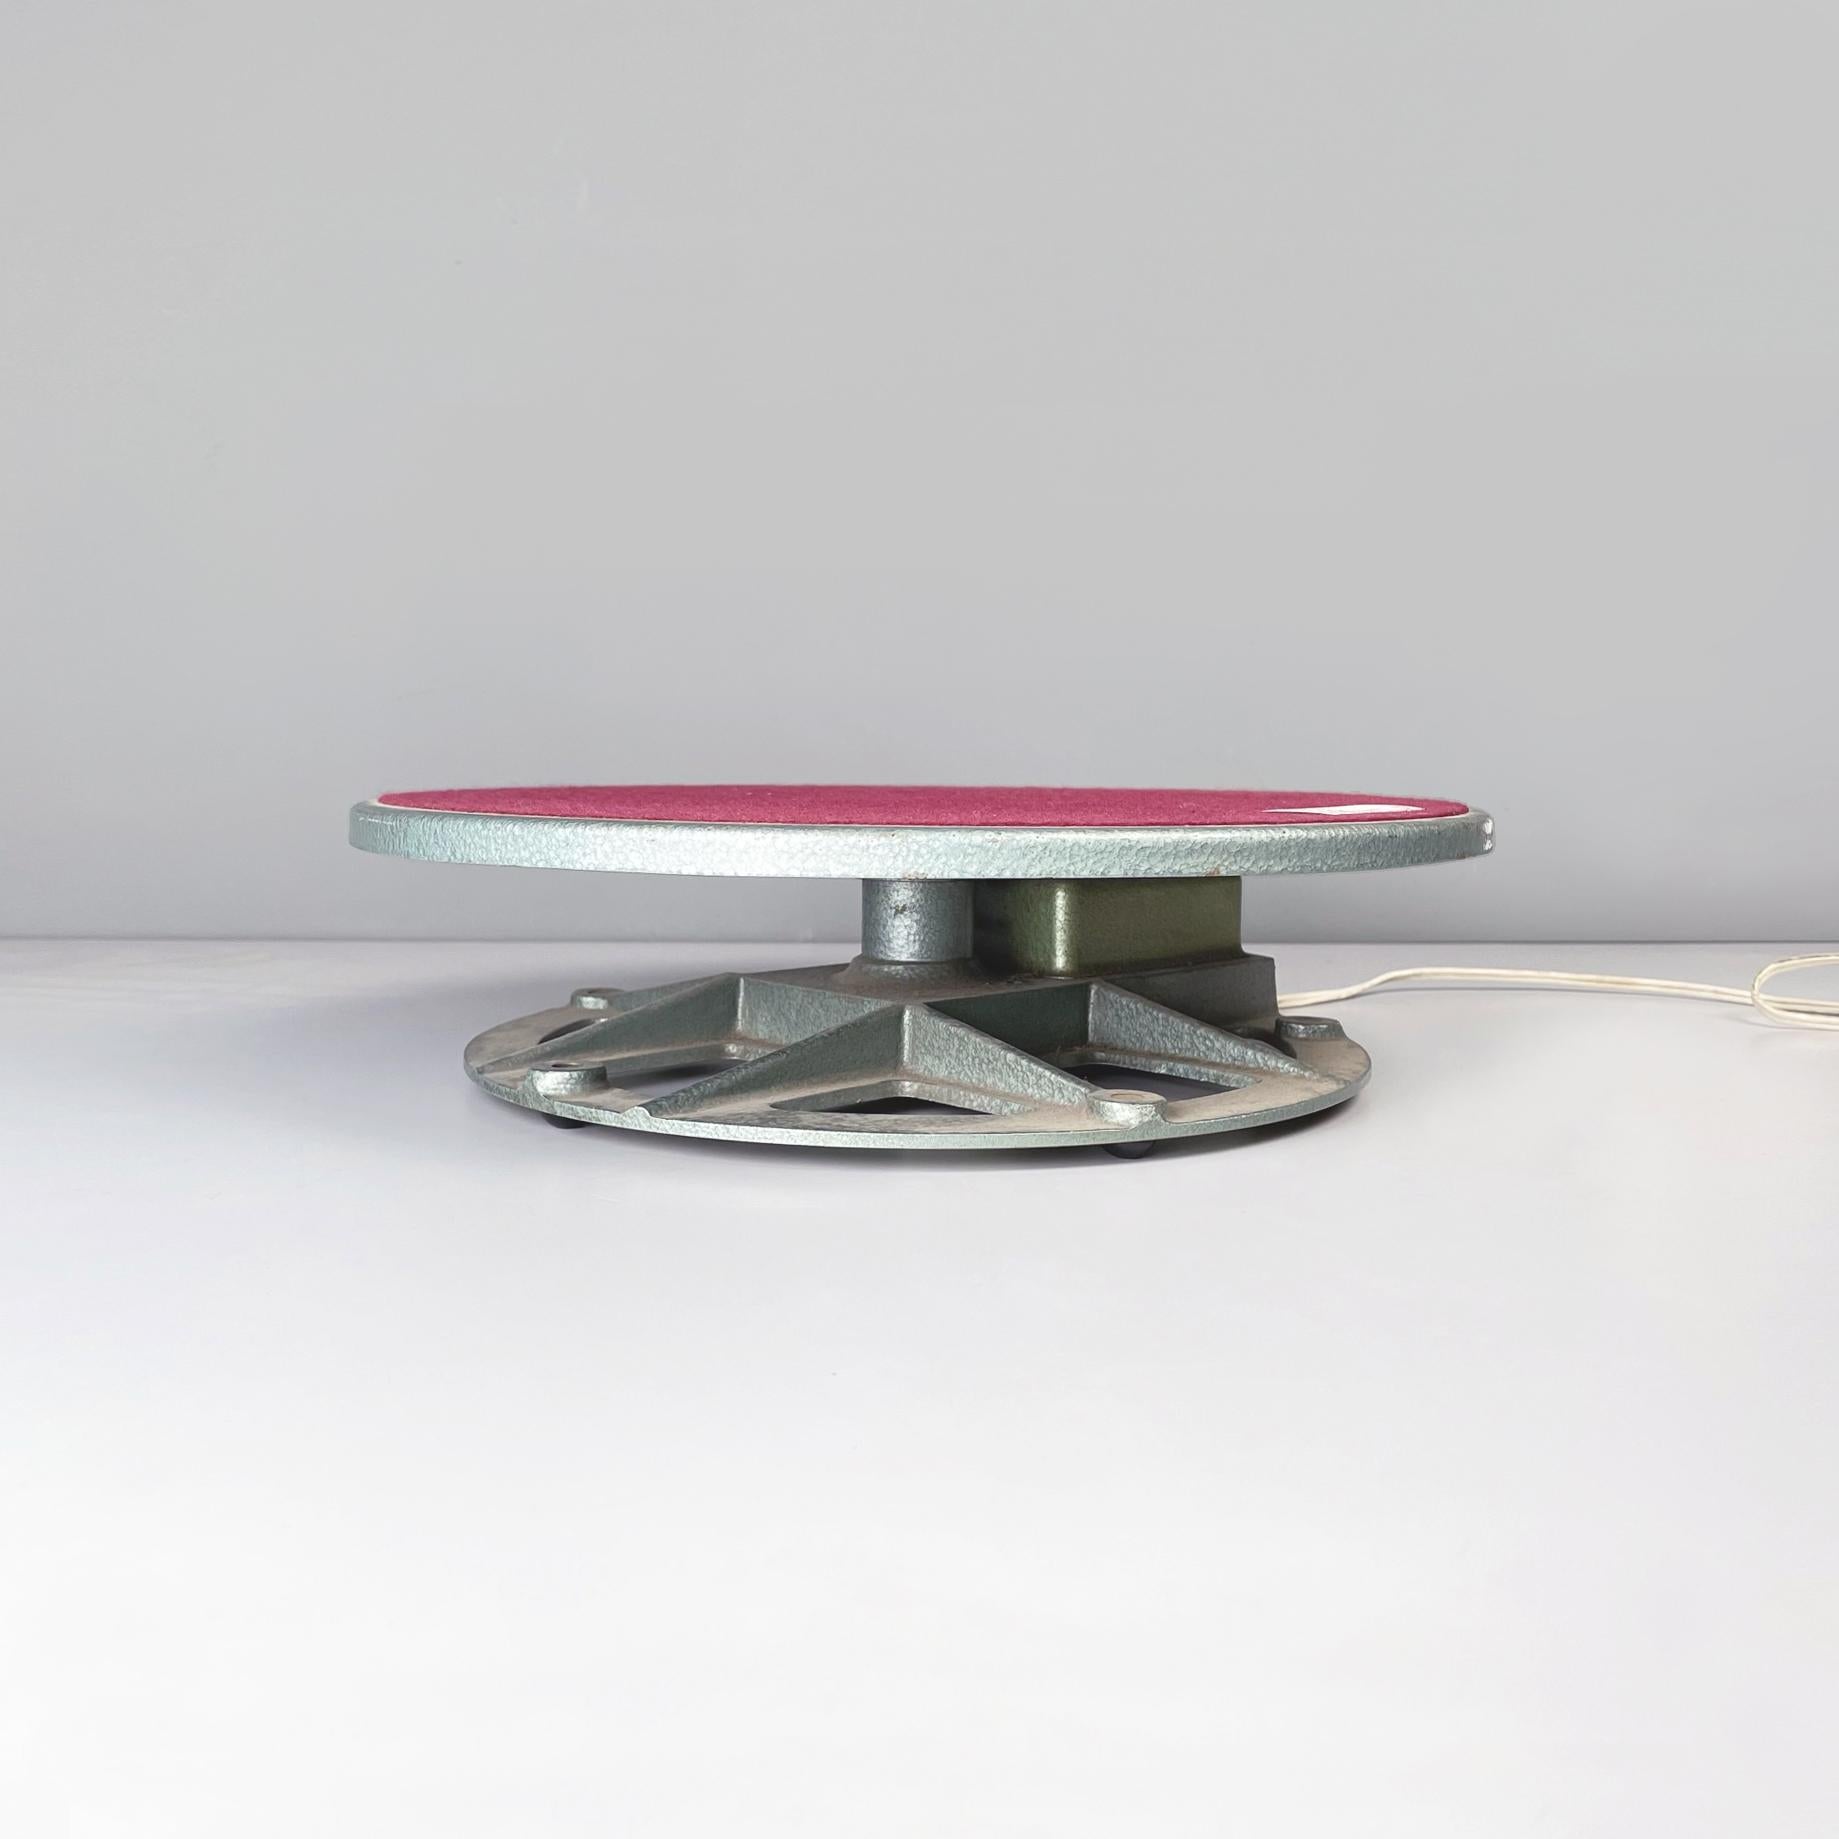 Italienischer moderner drehbarer Ausstellungsständer aus Metall und rotem Stoff, 1970er Jahre
Drehbarer Tischständer aus Metall und rotem Stoff. Das runde Regal hat eine Metallstruktur und ist in der Mitte mit einem burgunderroten Stoff bespannt.